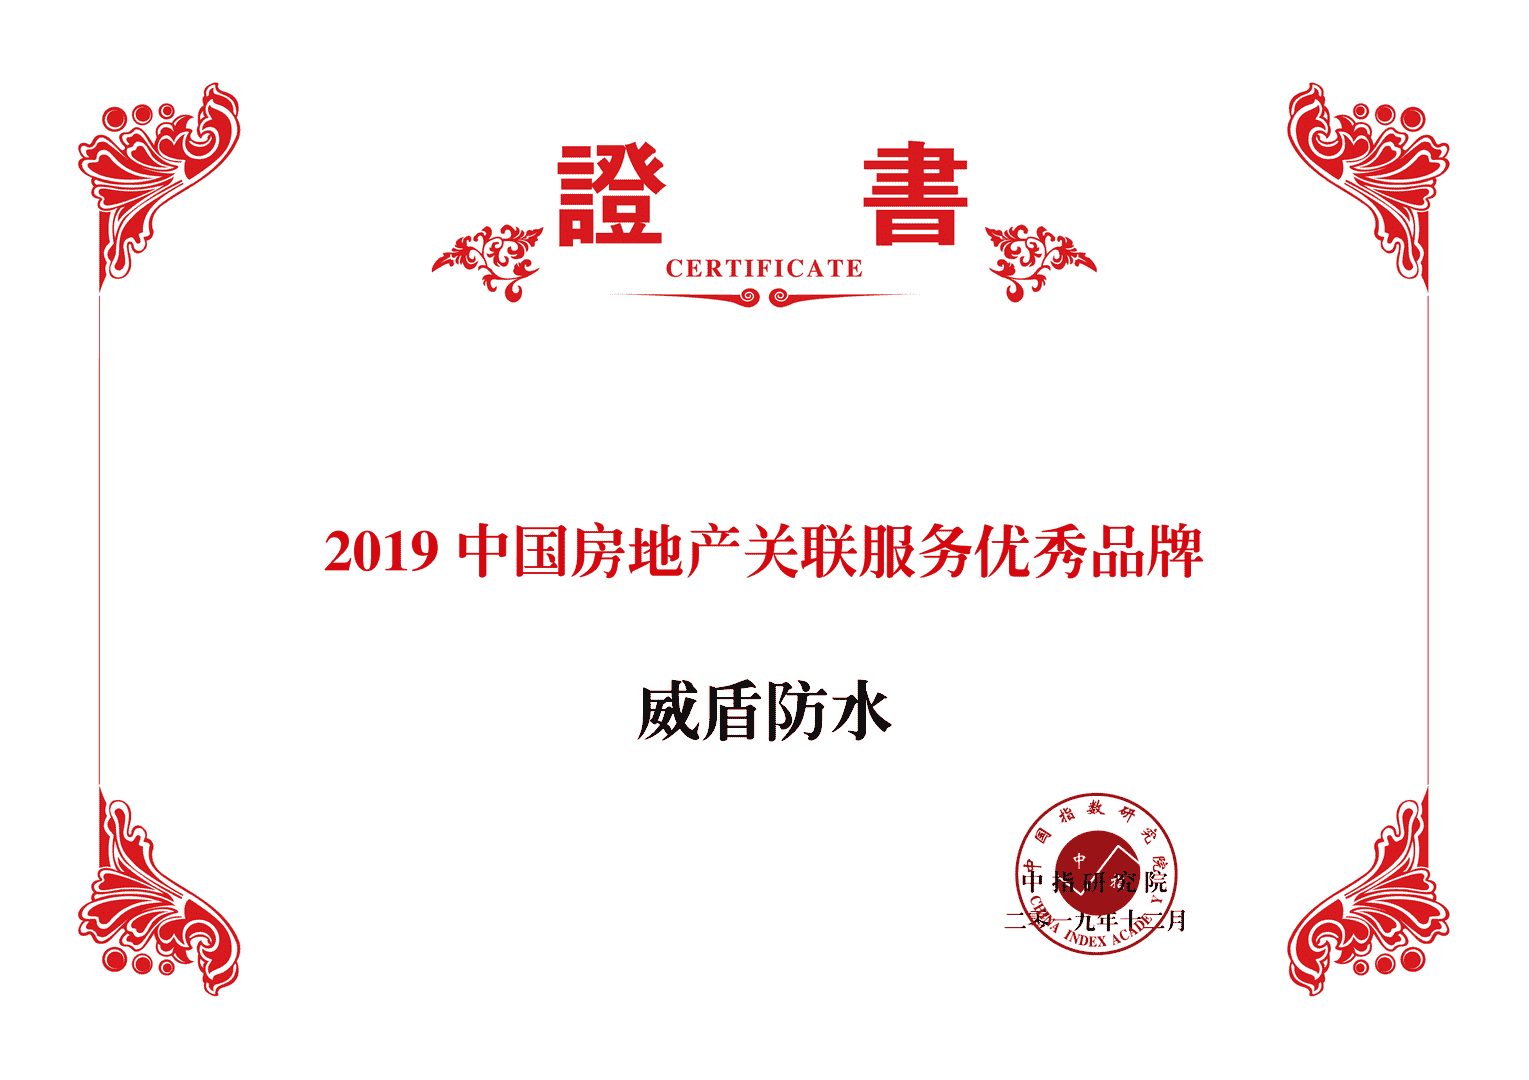 品质铸就荣誉 威盾荣膺“2019中国房地产关联服务优秀品牌”